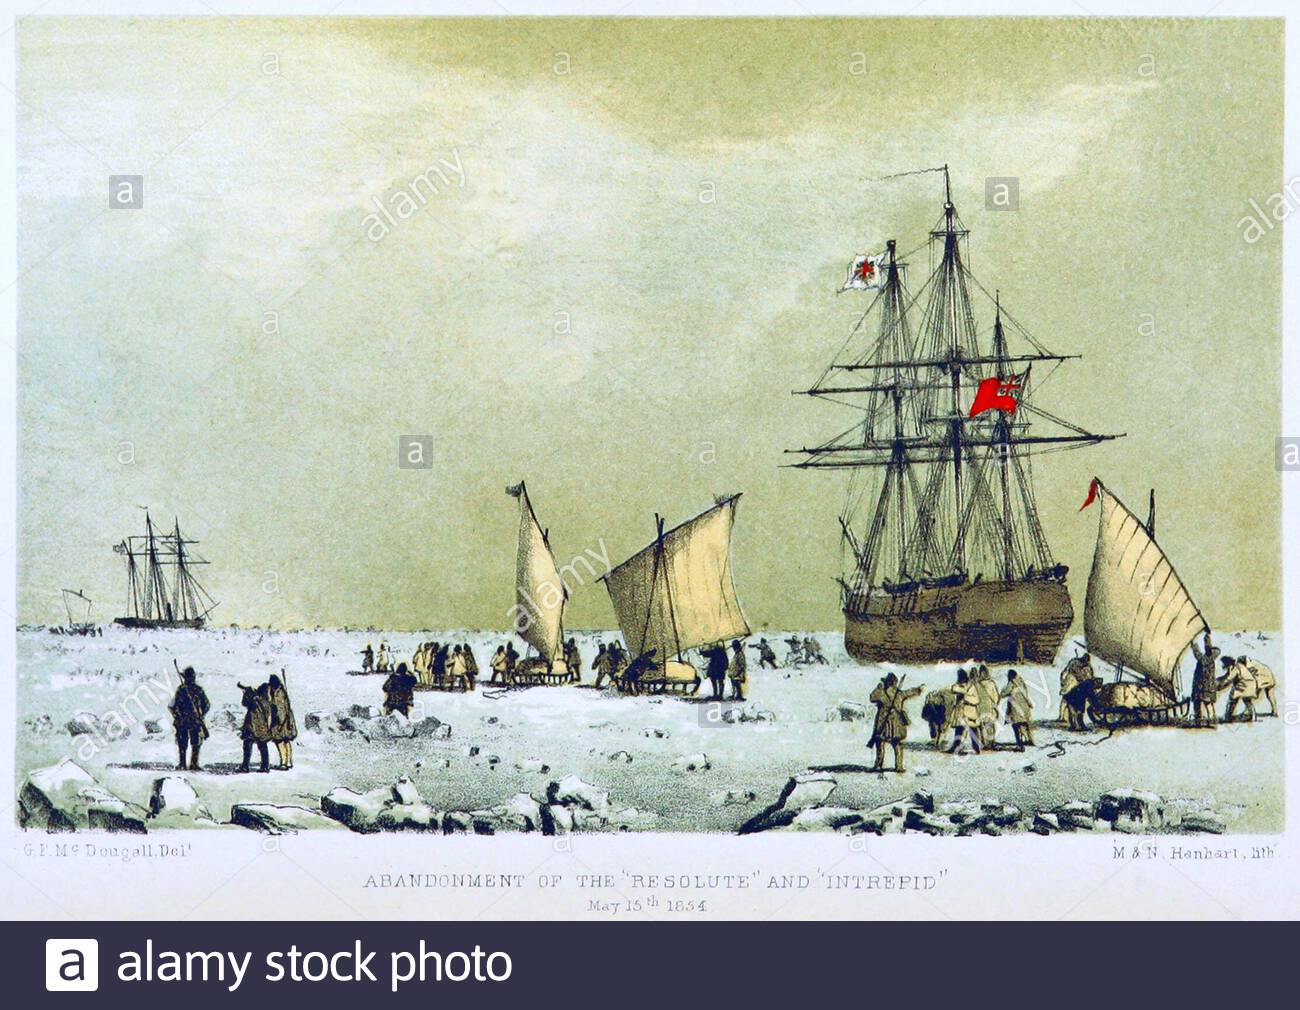 Nella ricerca di ufficiale della Royal Navy britannica e Arctic explorer, capitano Sir John Franklin, abbandono di HMS Resolute e HMS Intrepid, illustrazione d'epoca dal 1857 Foto Stock